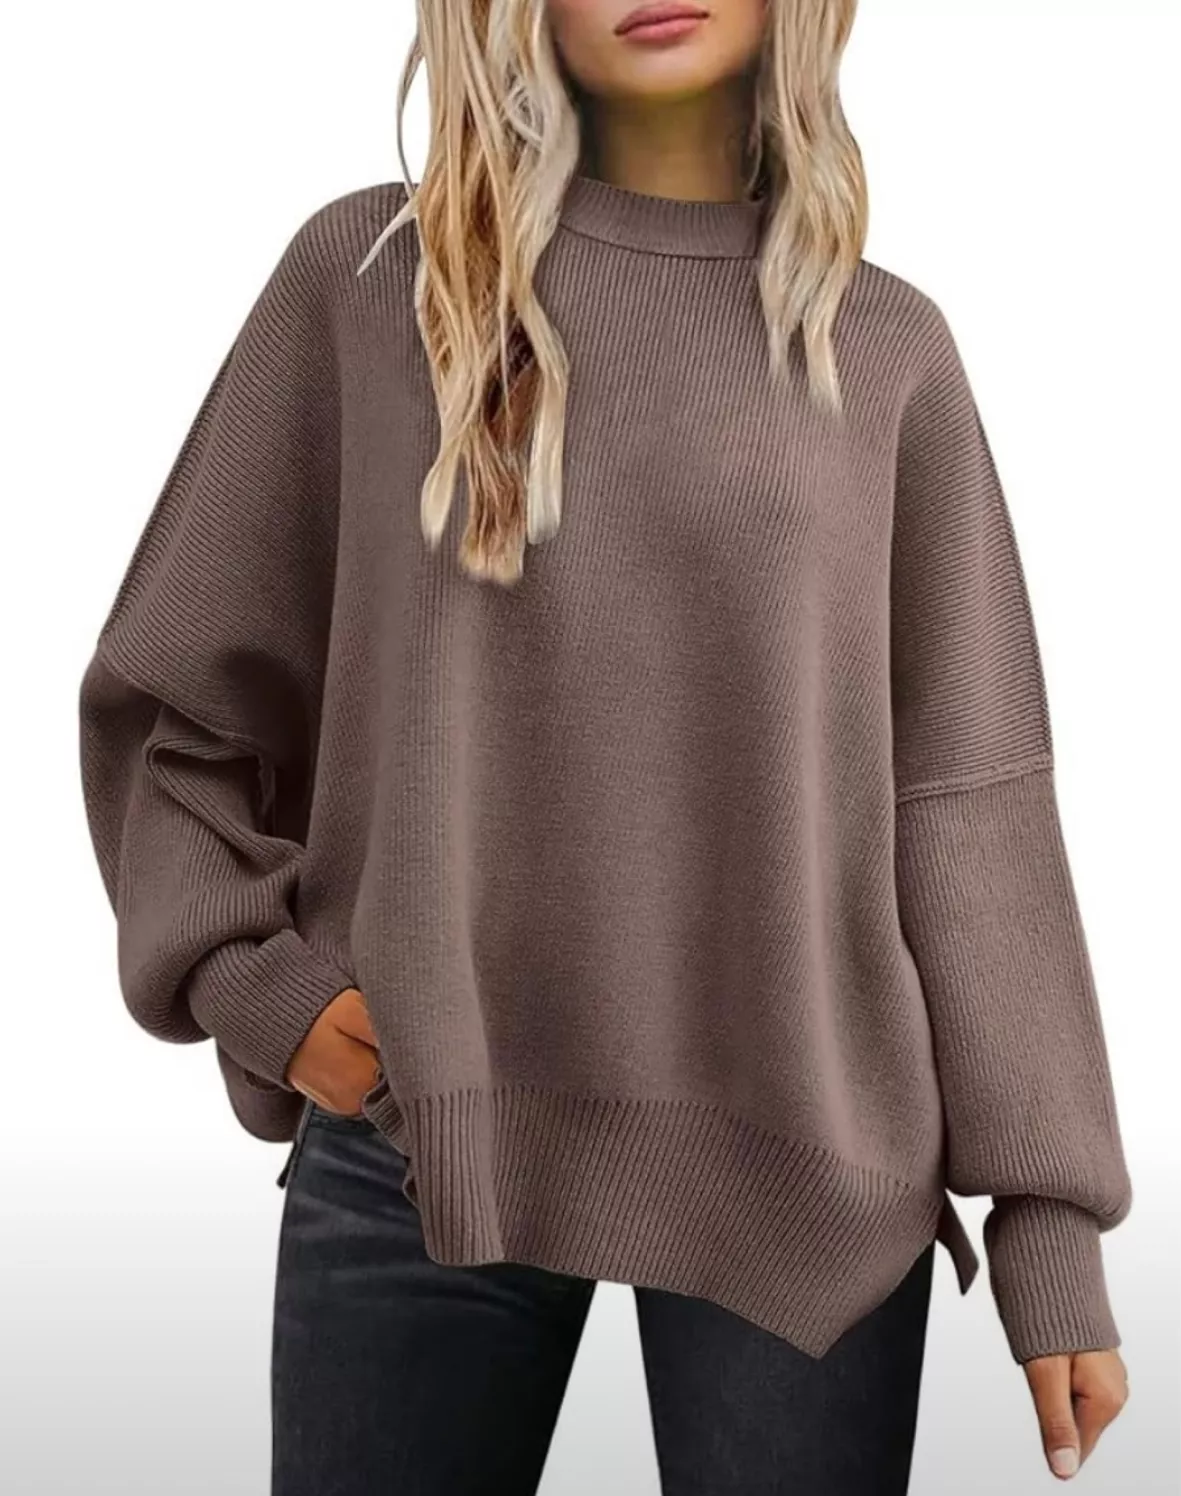 EFAN Women's Oversized Sweaters … curated on LTK